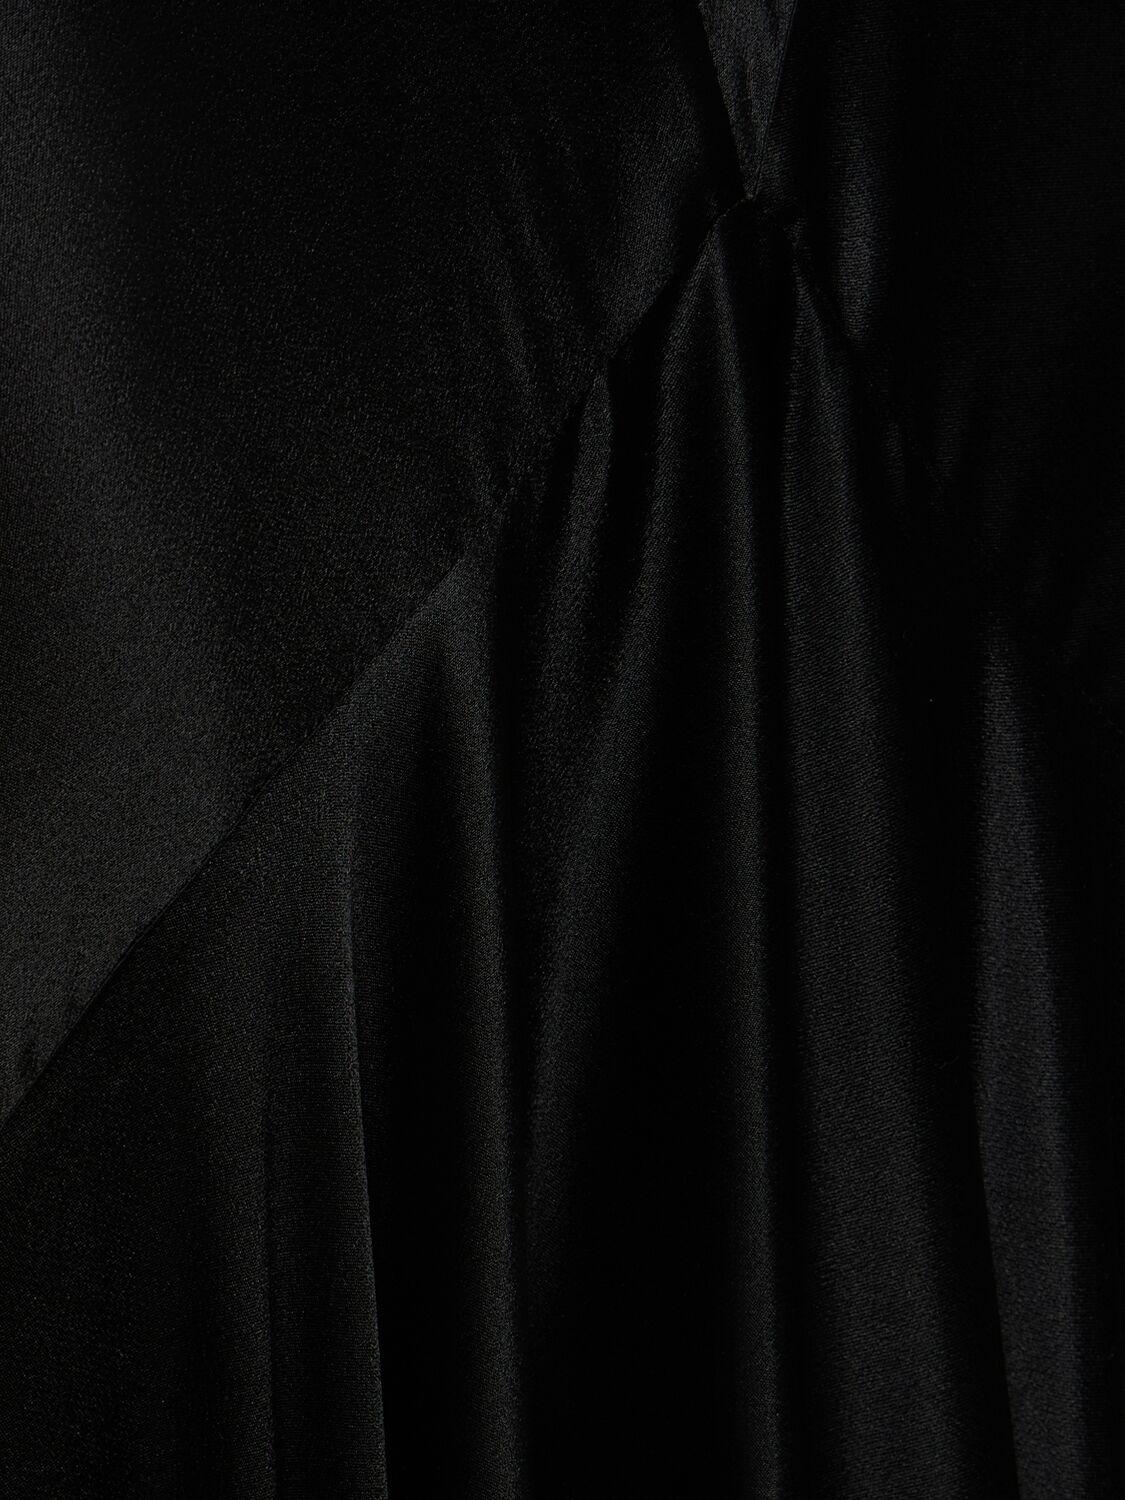 Shop Nina Ricci Flared Satin Long Dress In Black